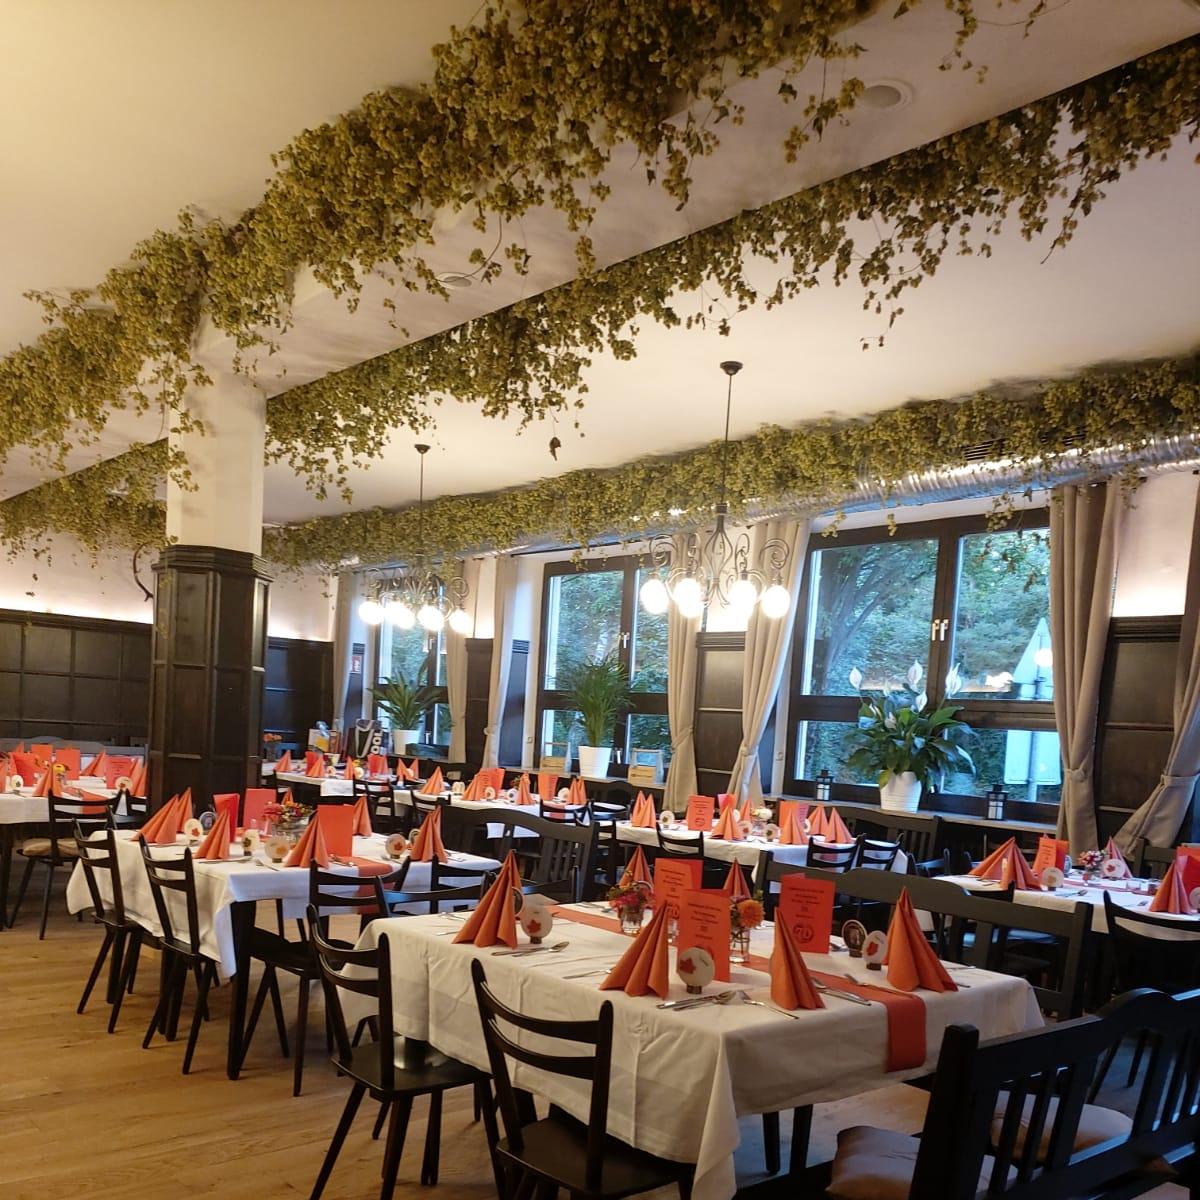 Restaurant "Harlachinger Gartenstadt" in München